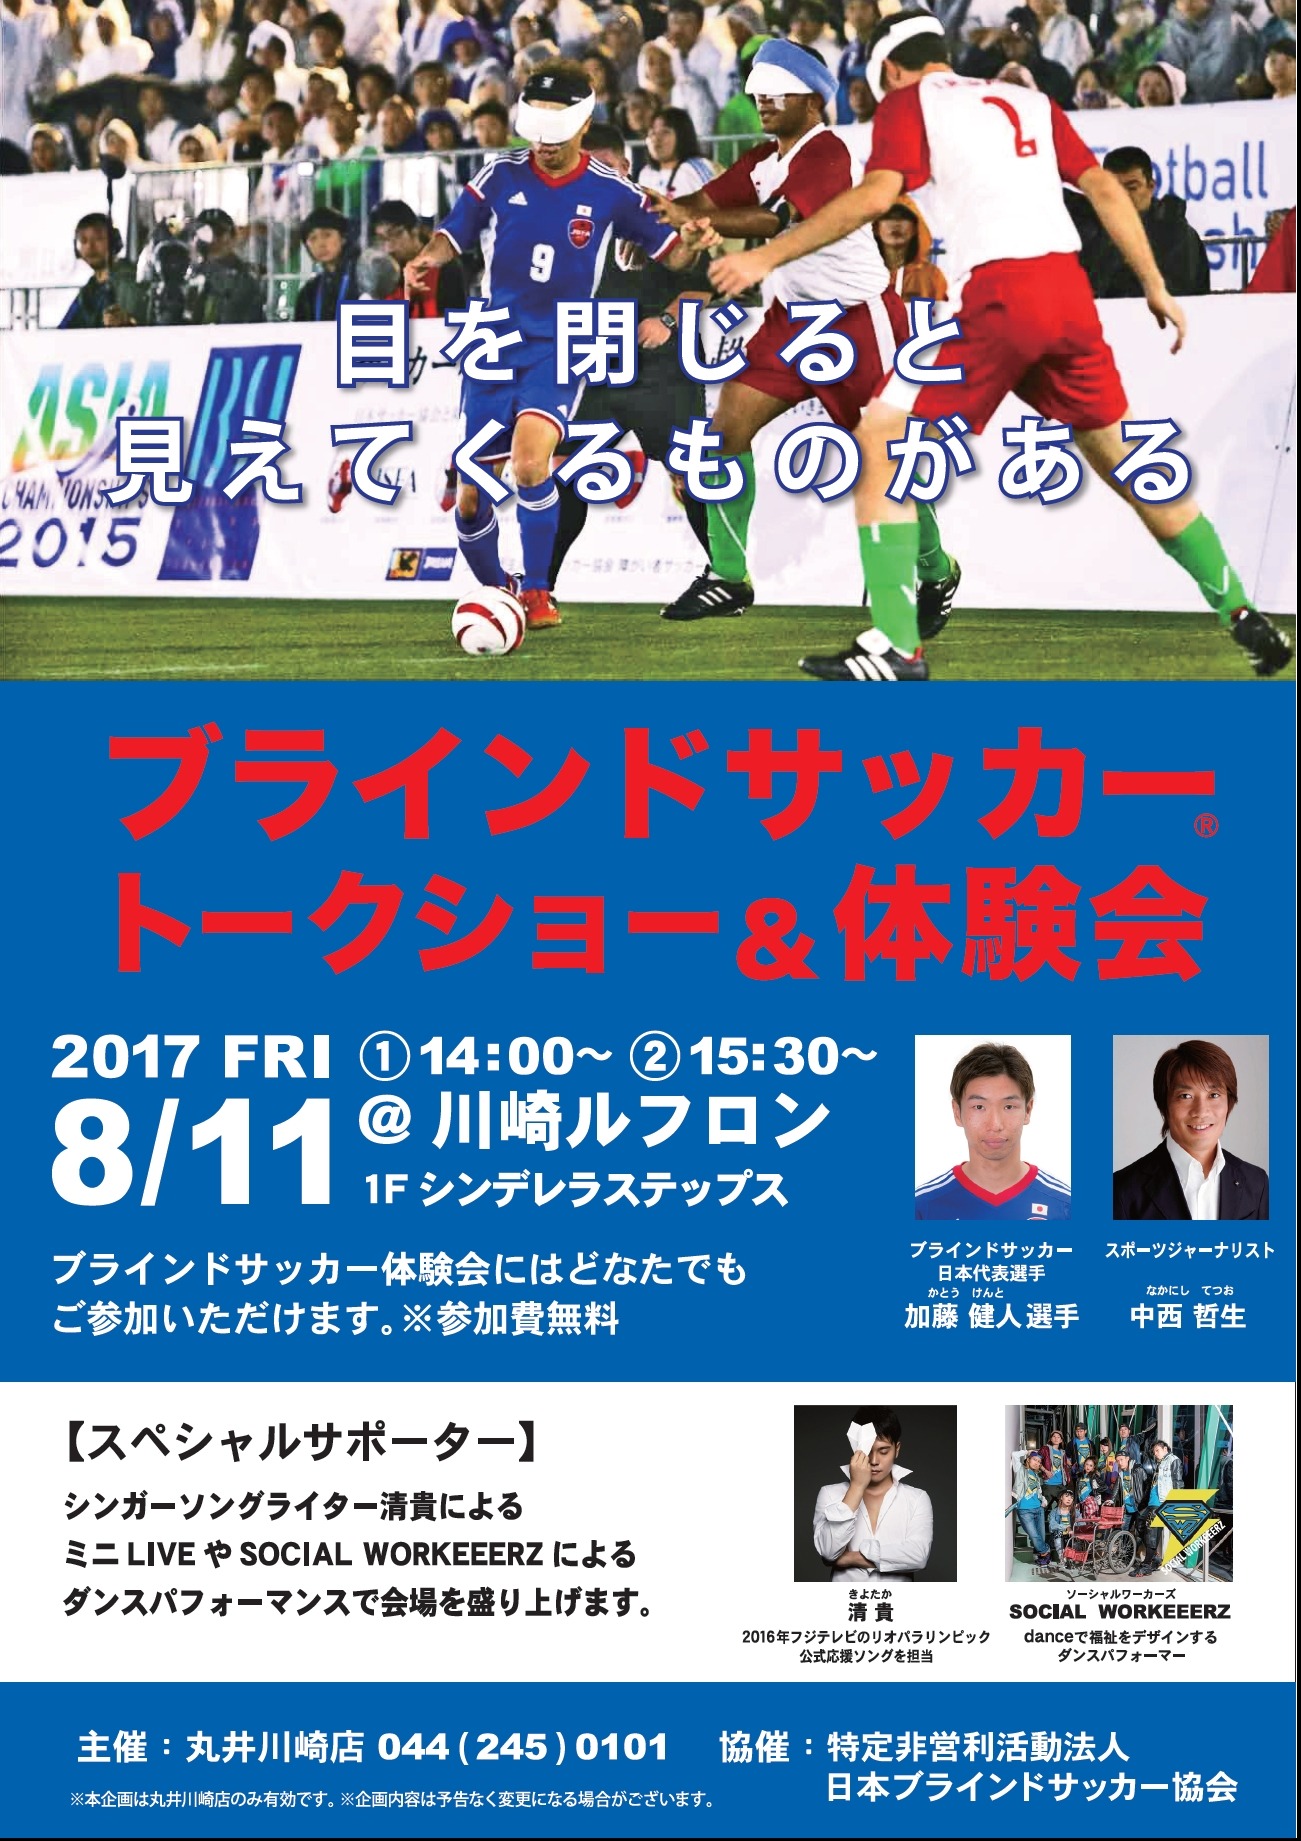 日本代表が参加する ブラインドサッカー トークショー 体験会 開催 Cycle やわらかスポーツ情報サイト